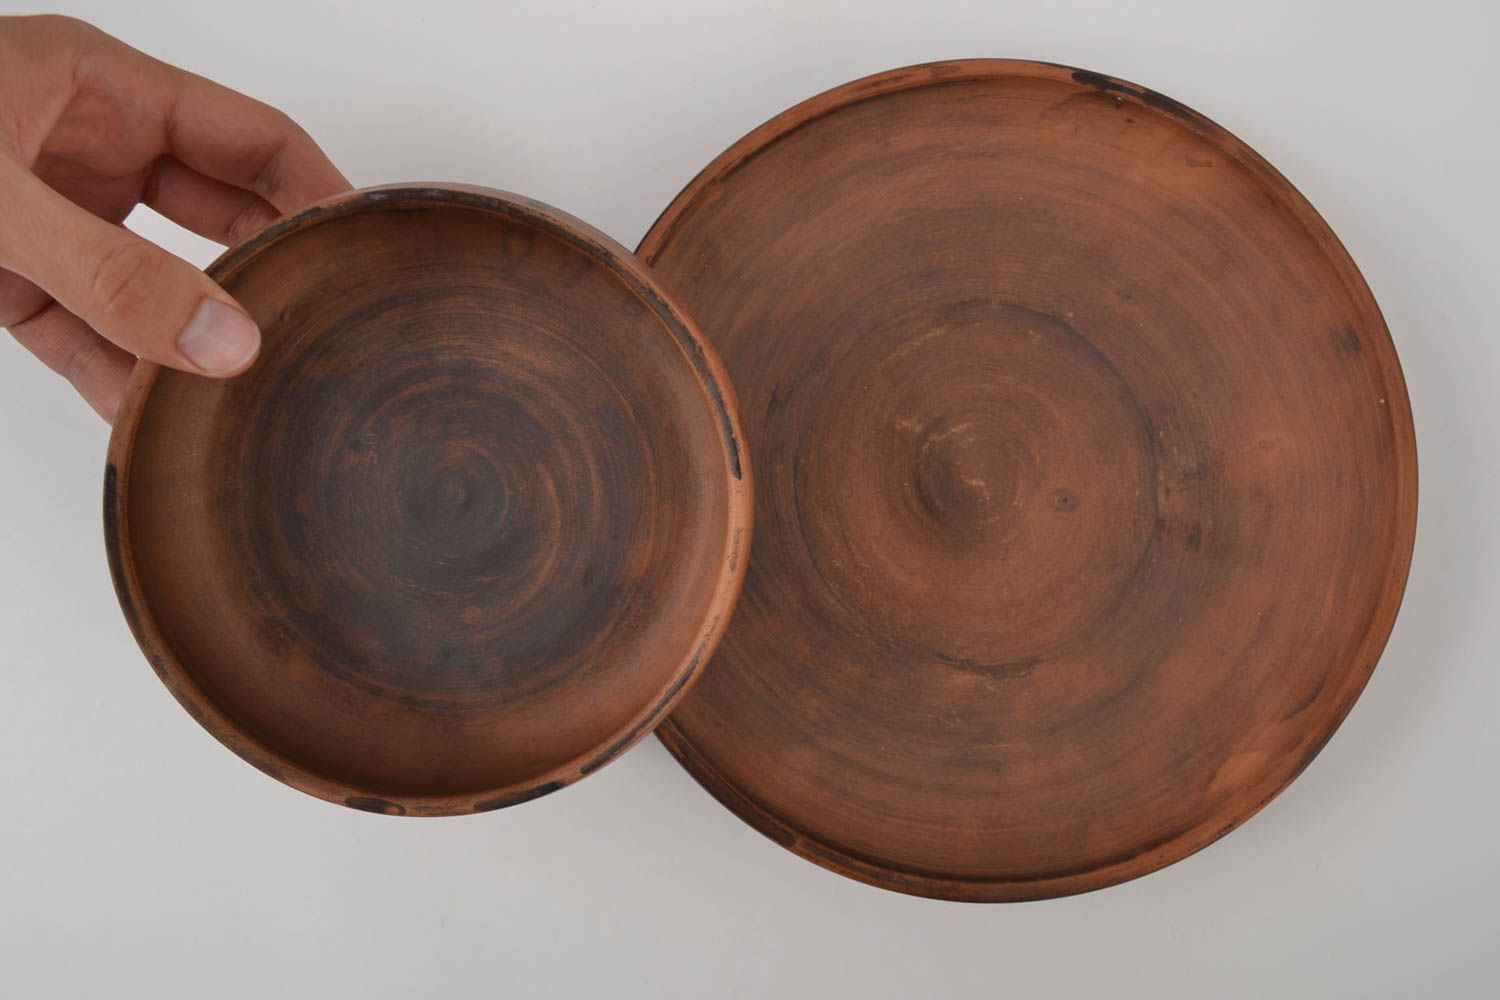 Plato de barro hecho a mano y cuenco de cerámica artesanal utensilios de cocina foto 2